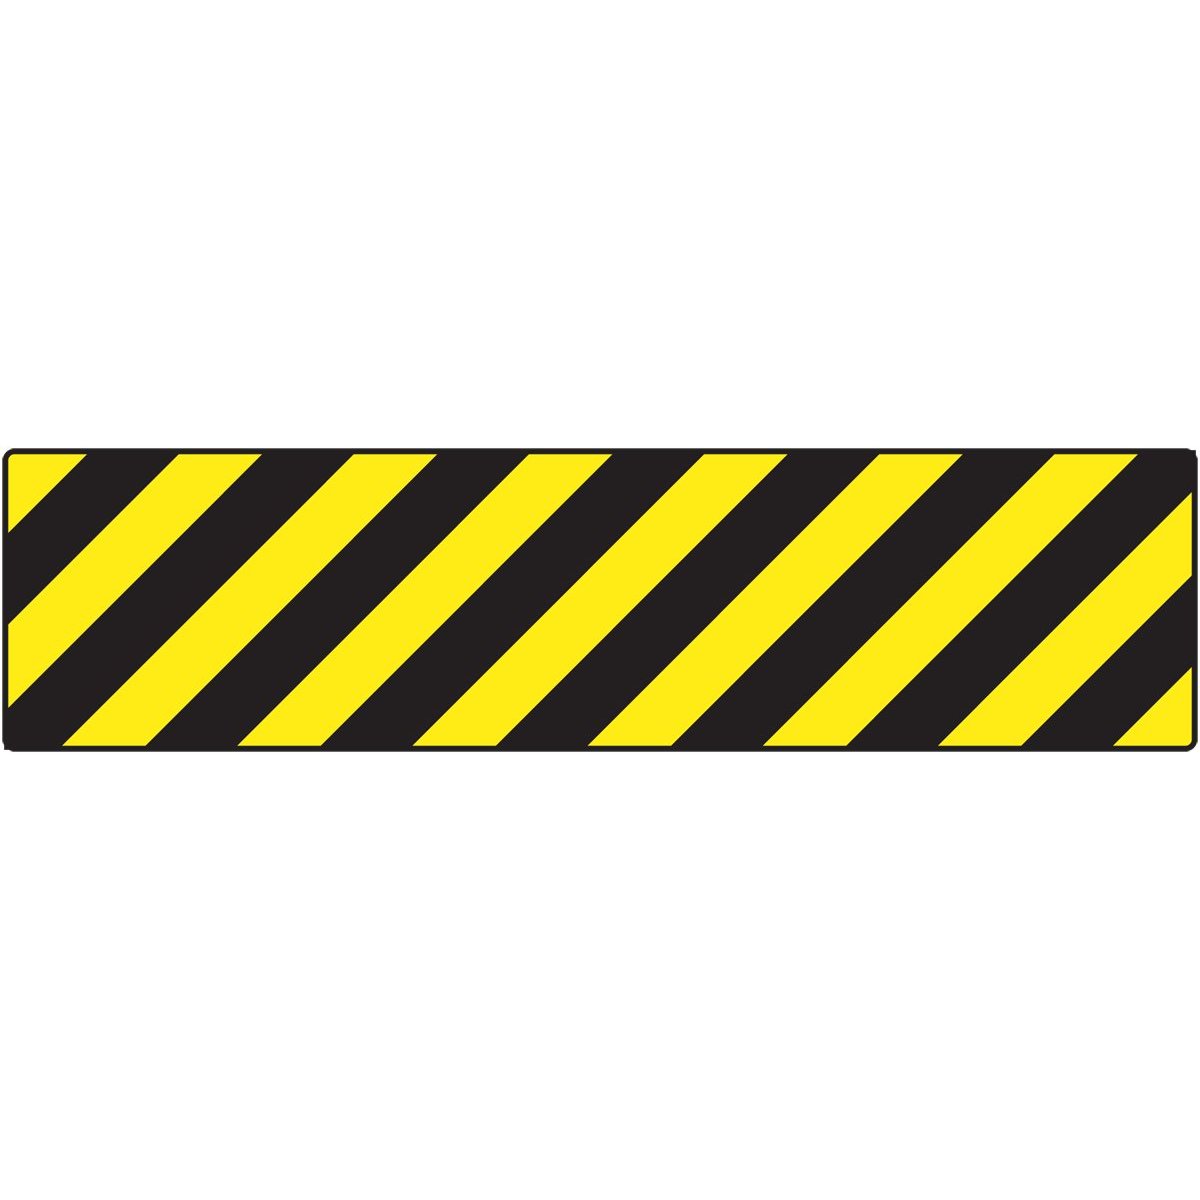 Caution Tape Clipart